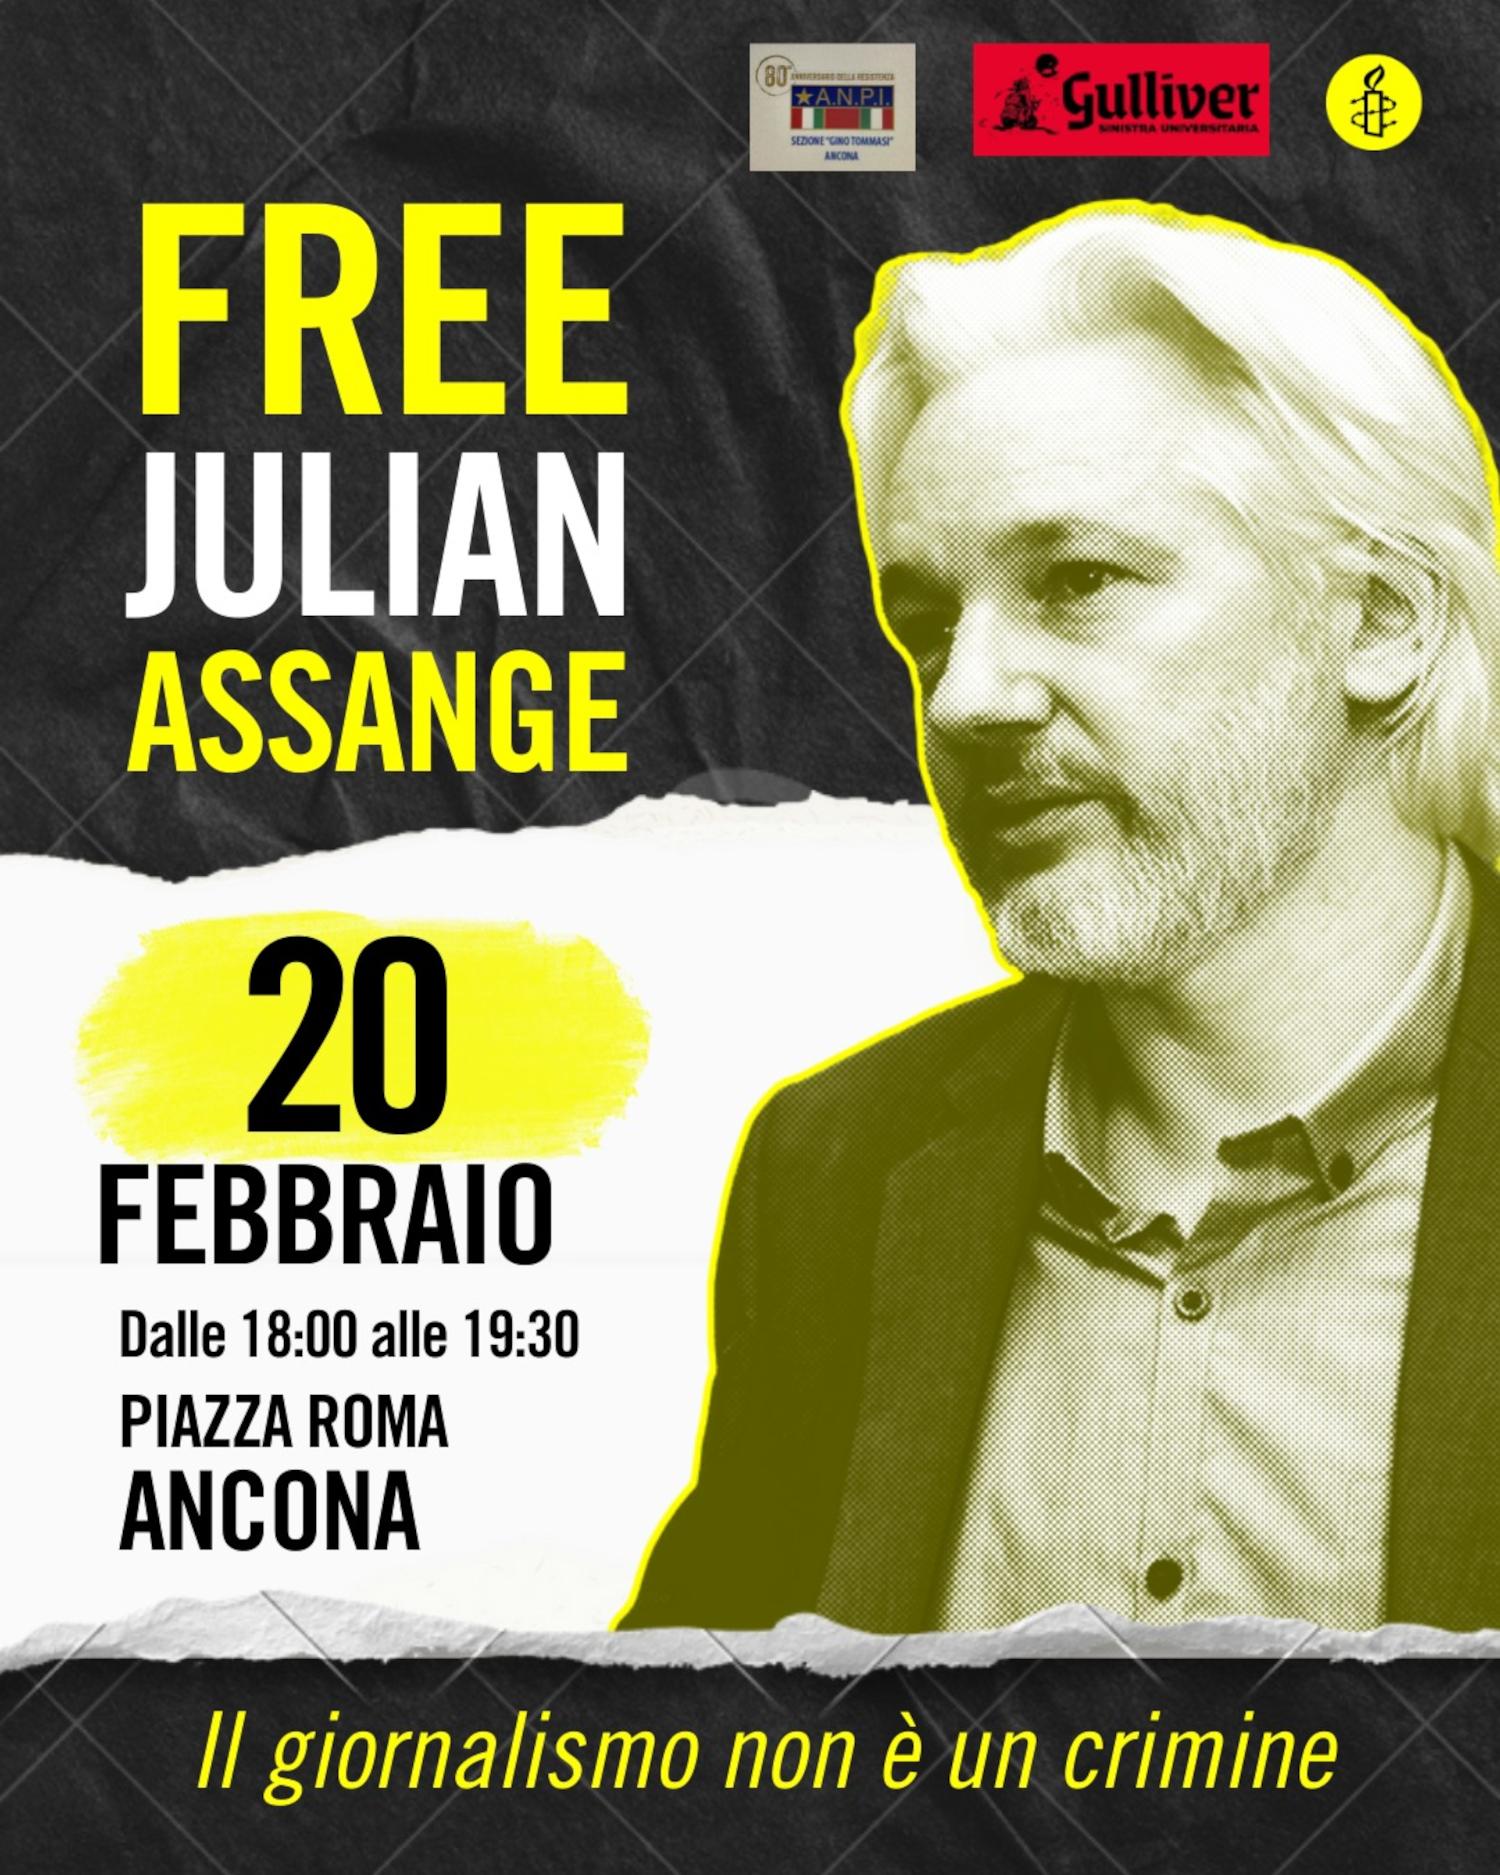 Free Julian Assange, anche ad Ancona la mobilitazione globale di Amnesty International